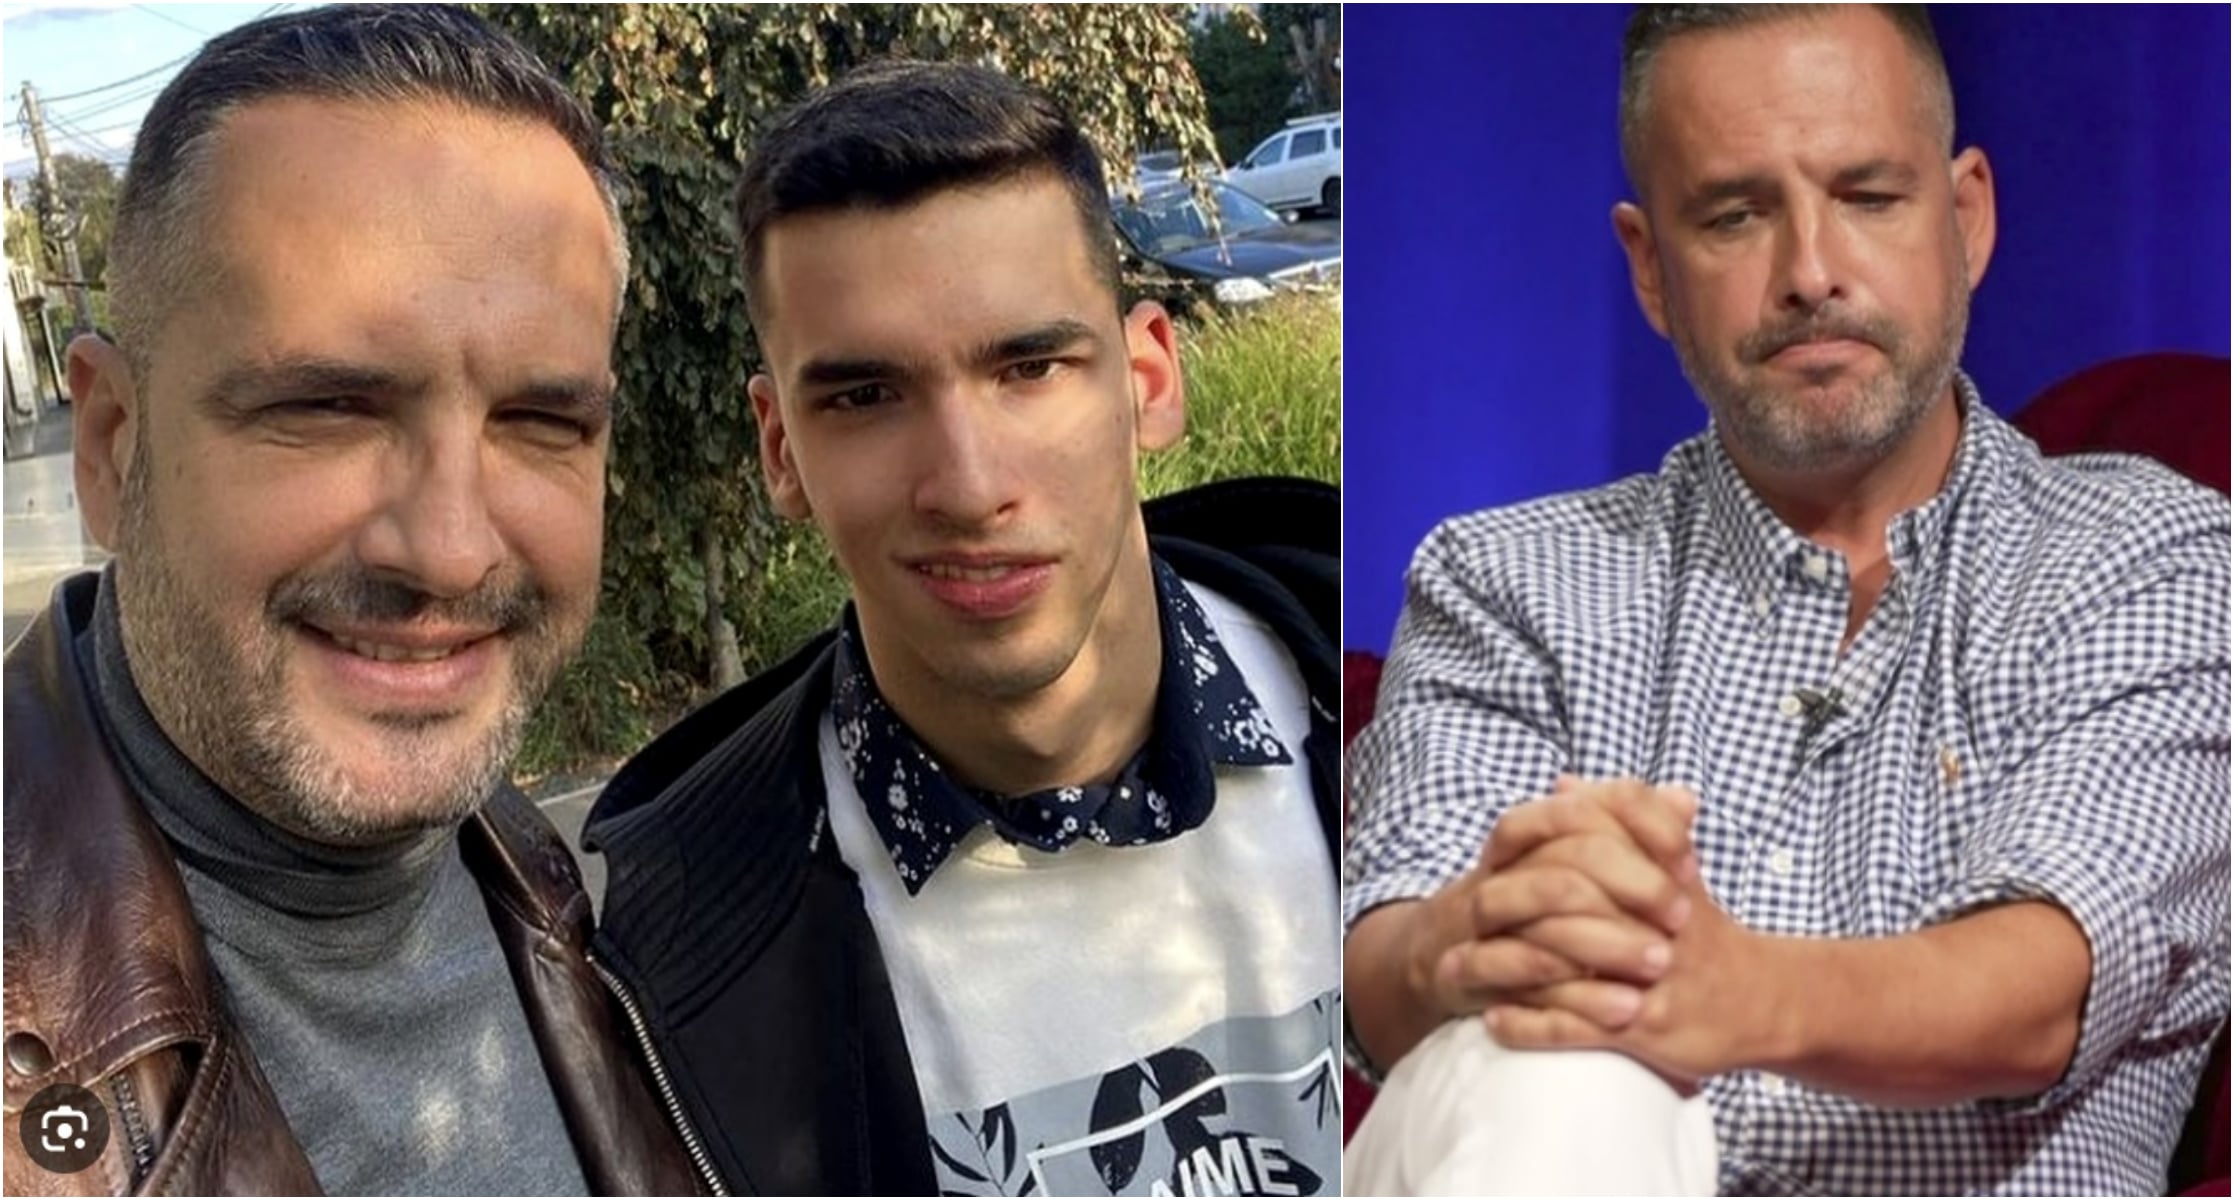 Medicii nemți, uimiți de fiul cu nevoi speciale al lui Mădălin Ionescu: "Am văzut doar 2 creiere ca ale lui Filip: la Einstein și la Oppenheimer"